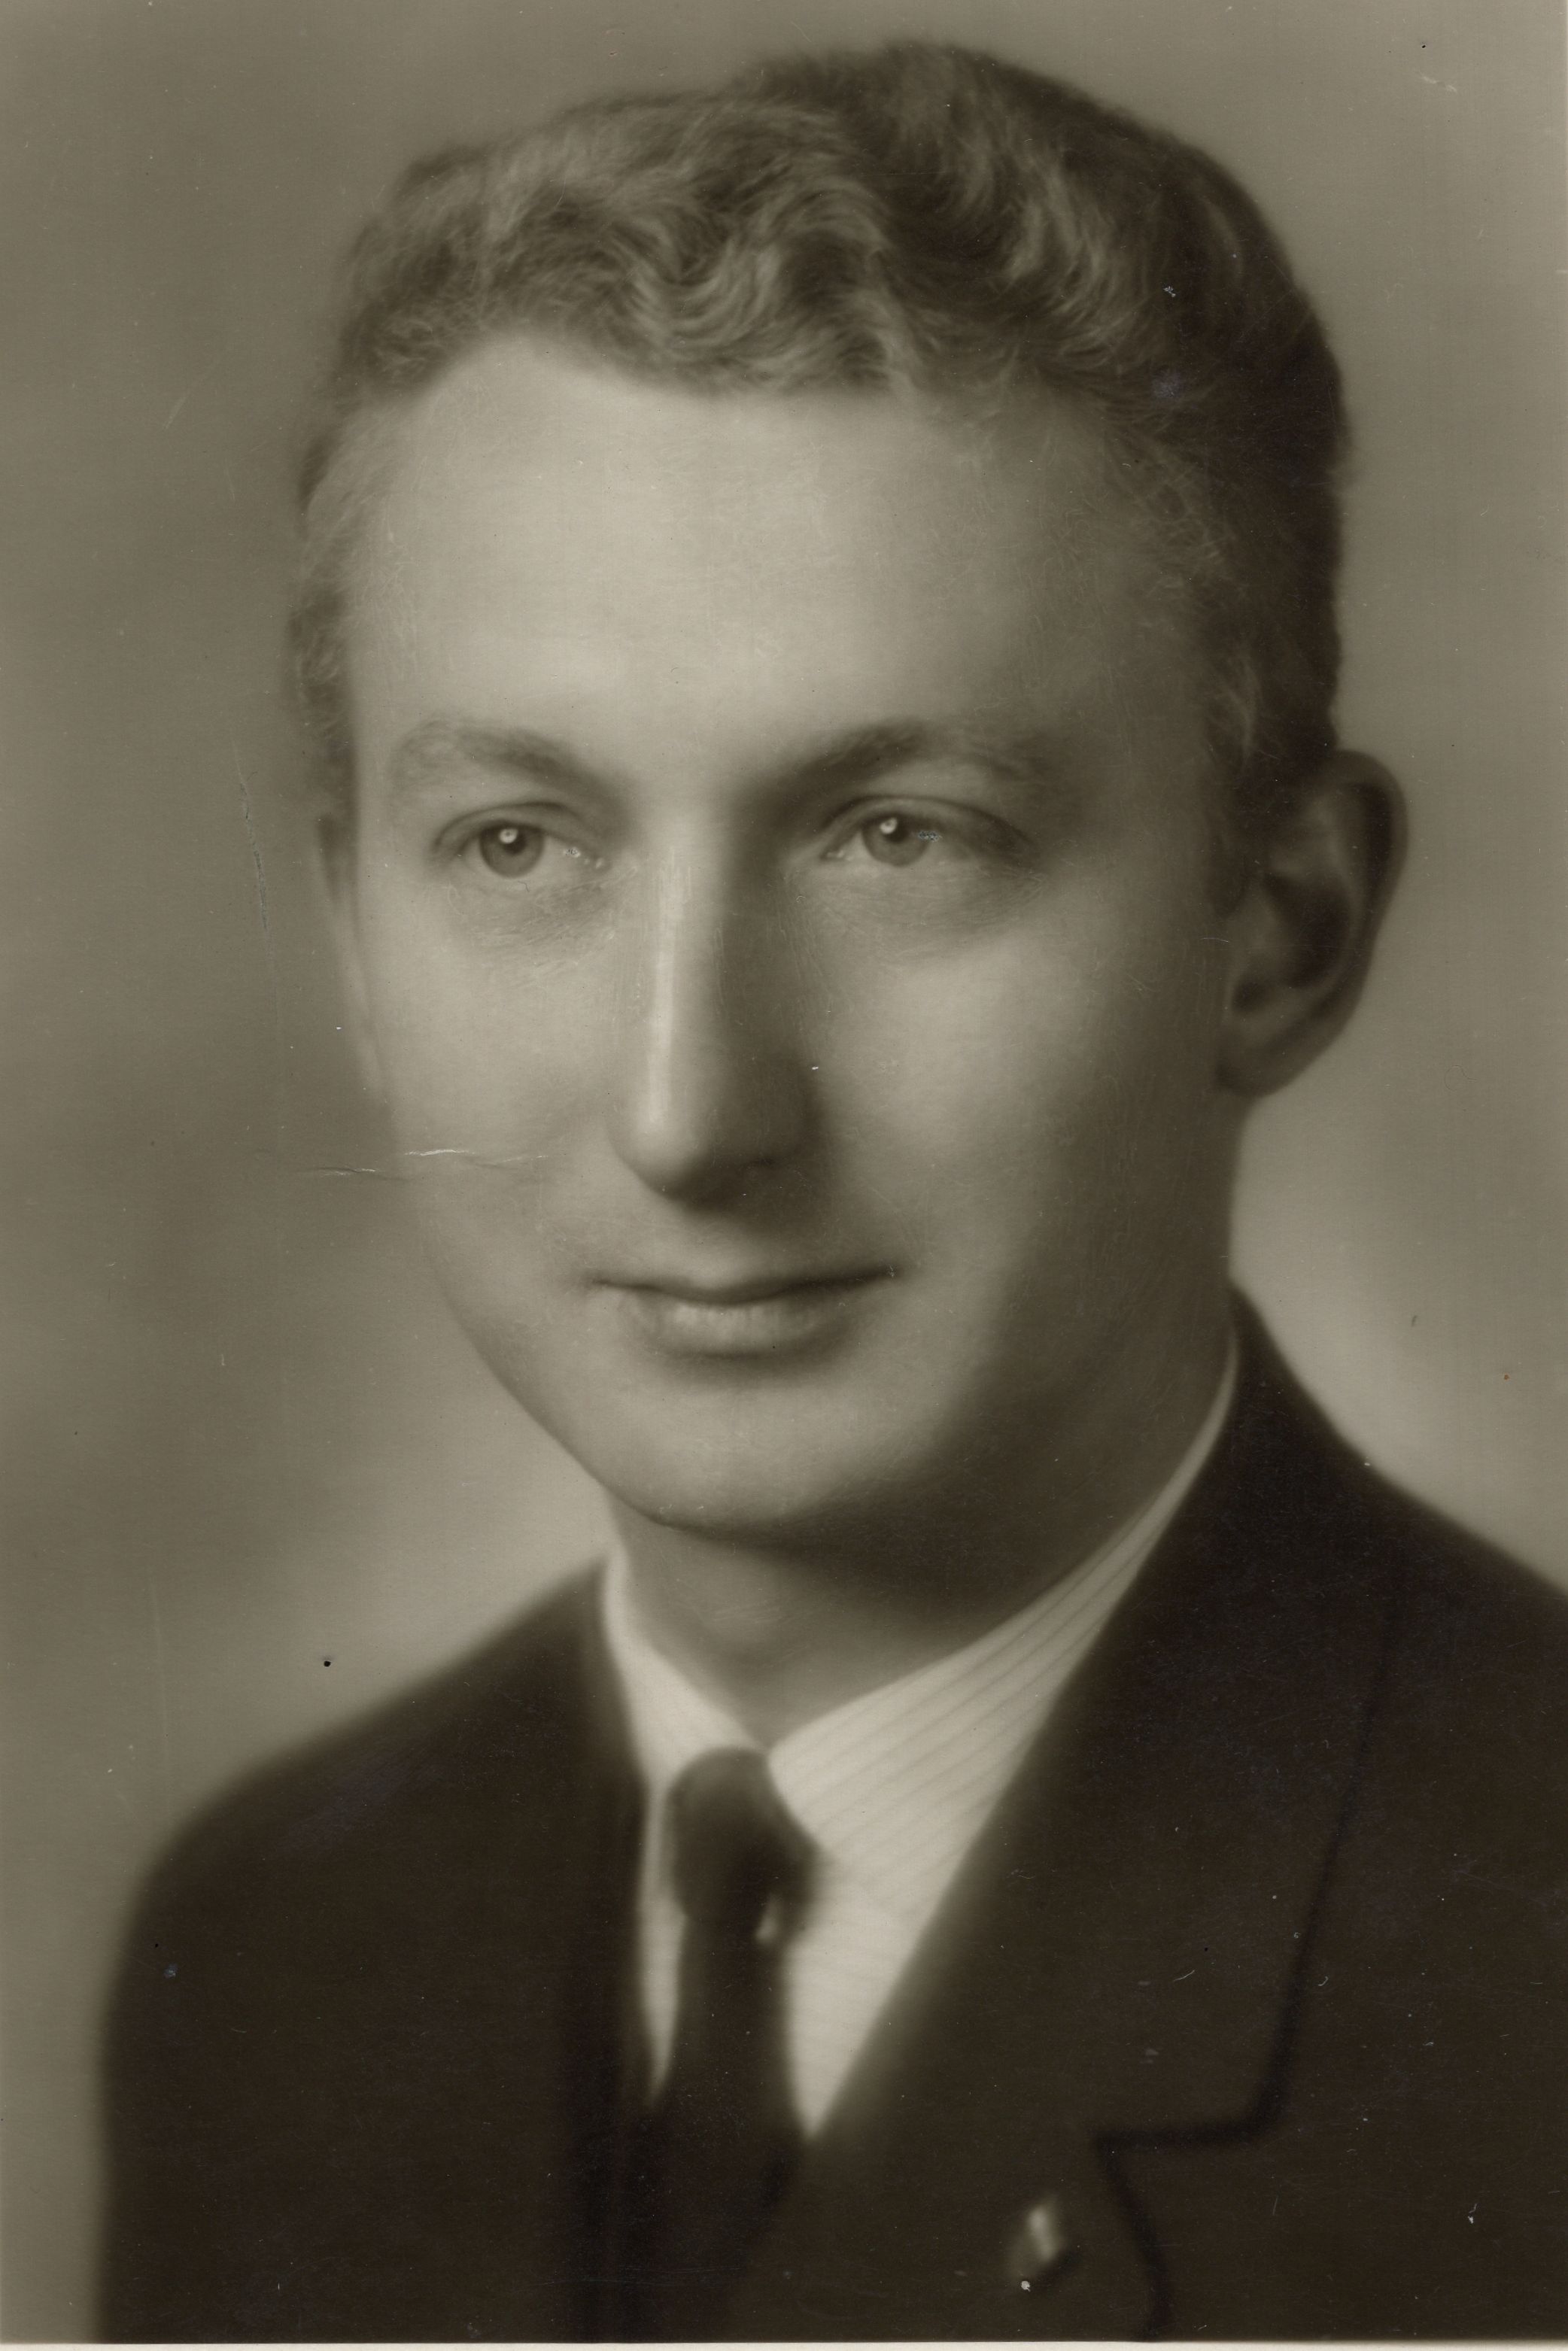 Zdeněk Štěpán, a graduation photo, 1957